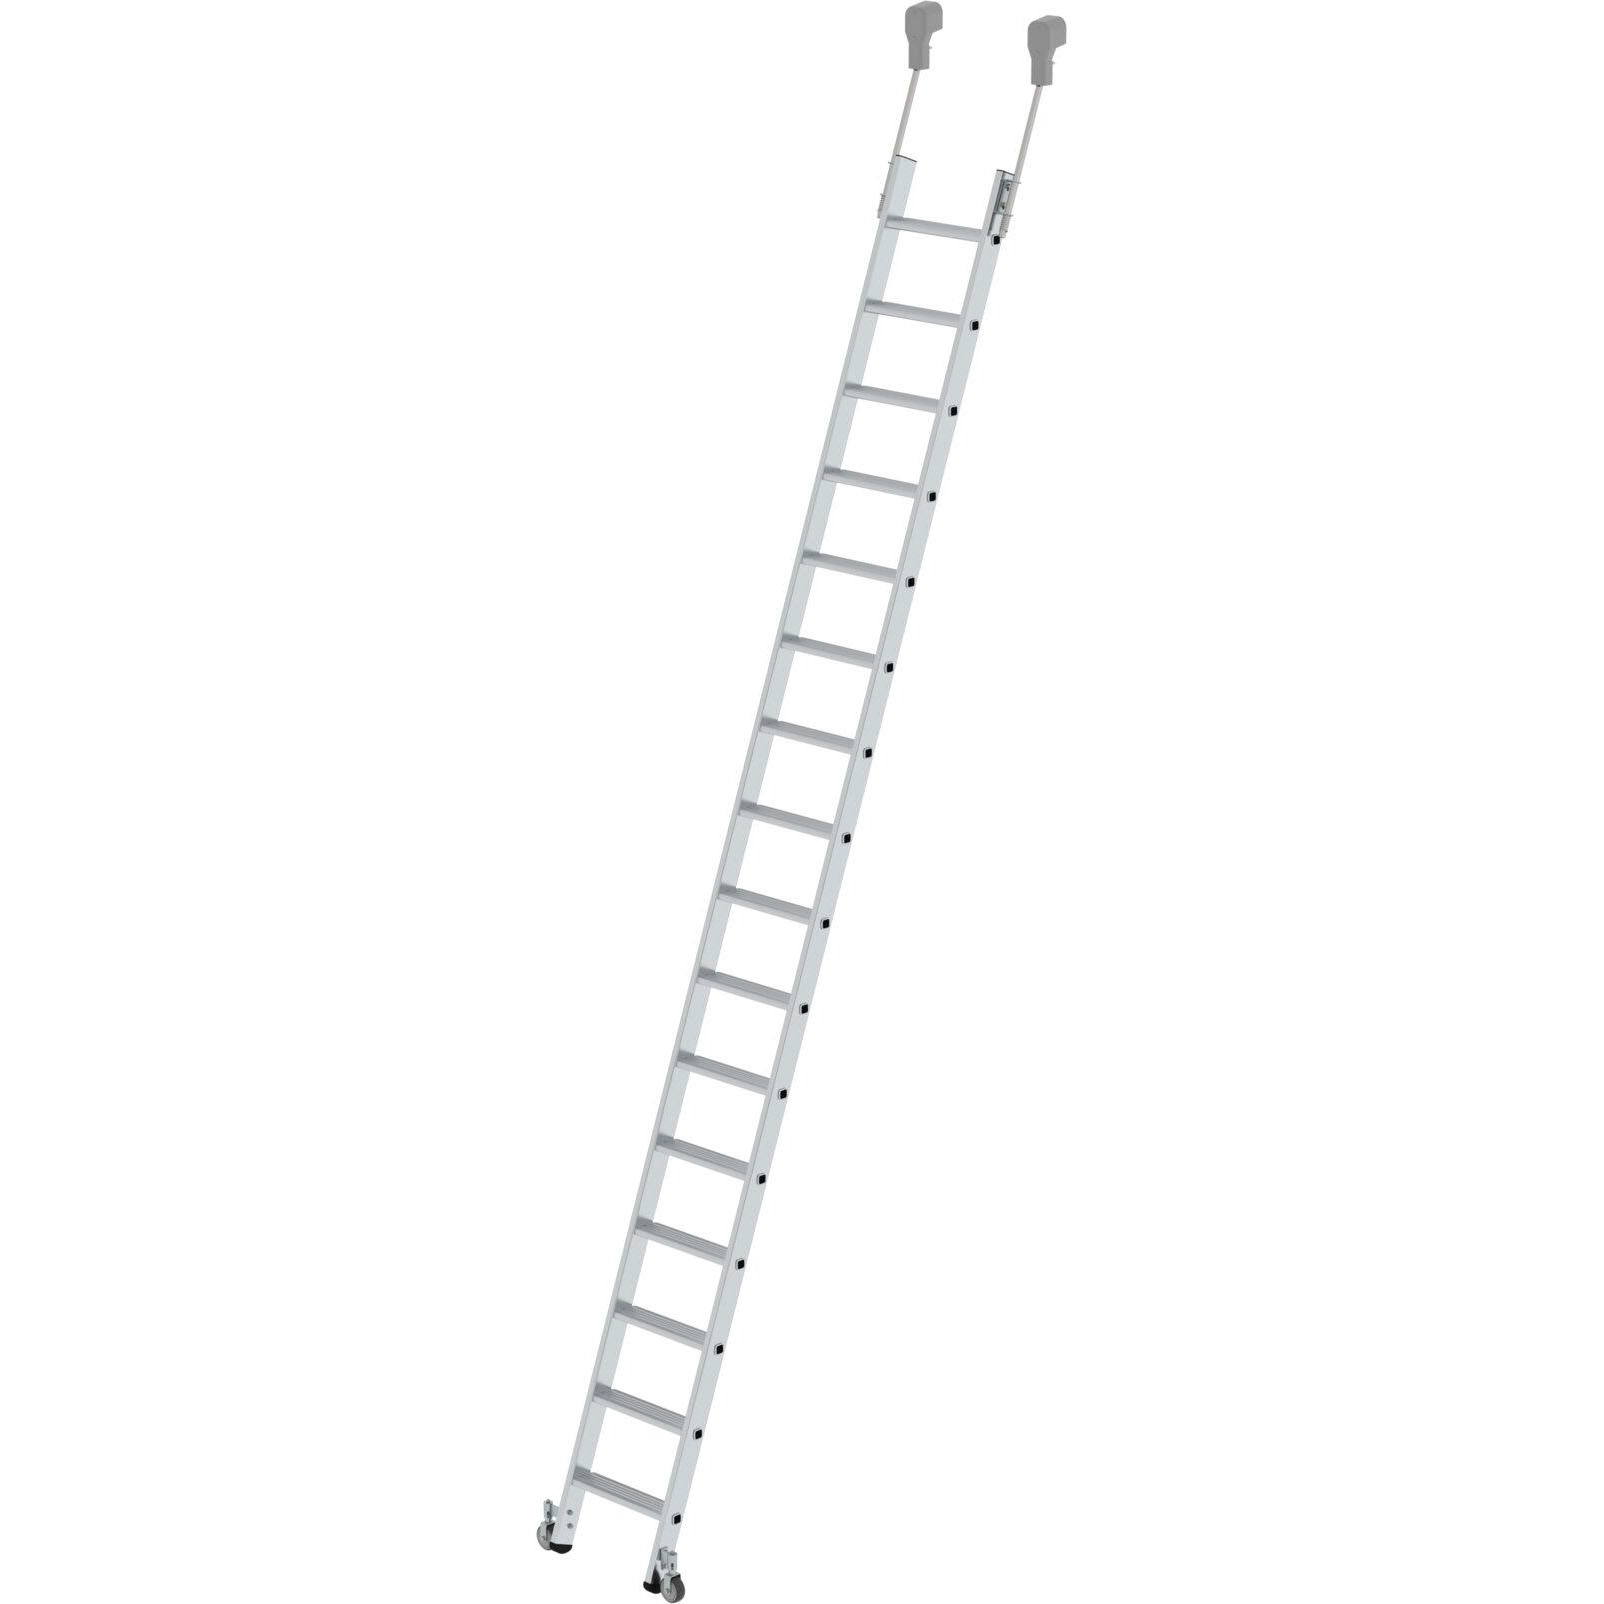 Мобильная стеллажная лестница из алюминия 16 ступеней Munk 041416